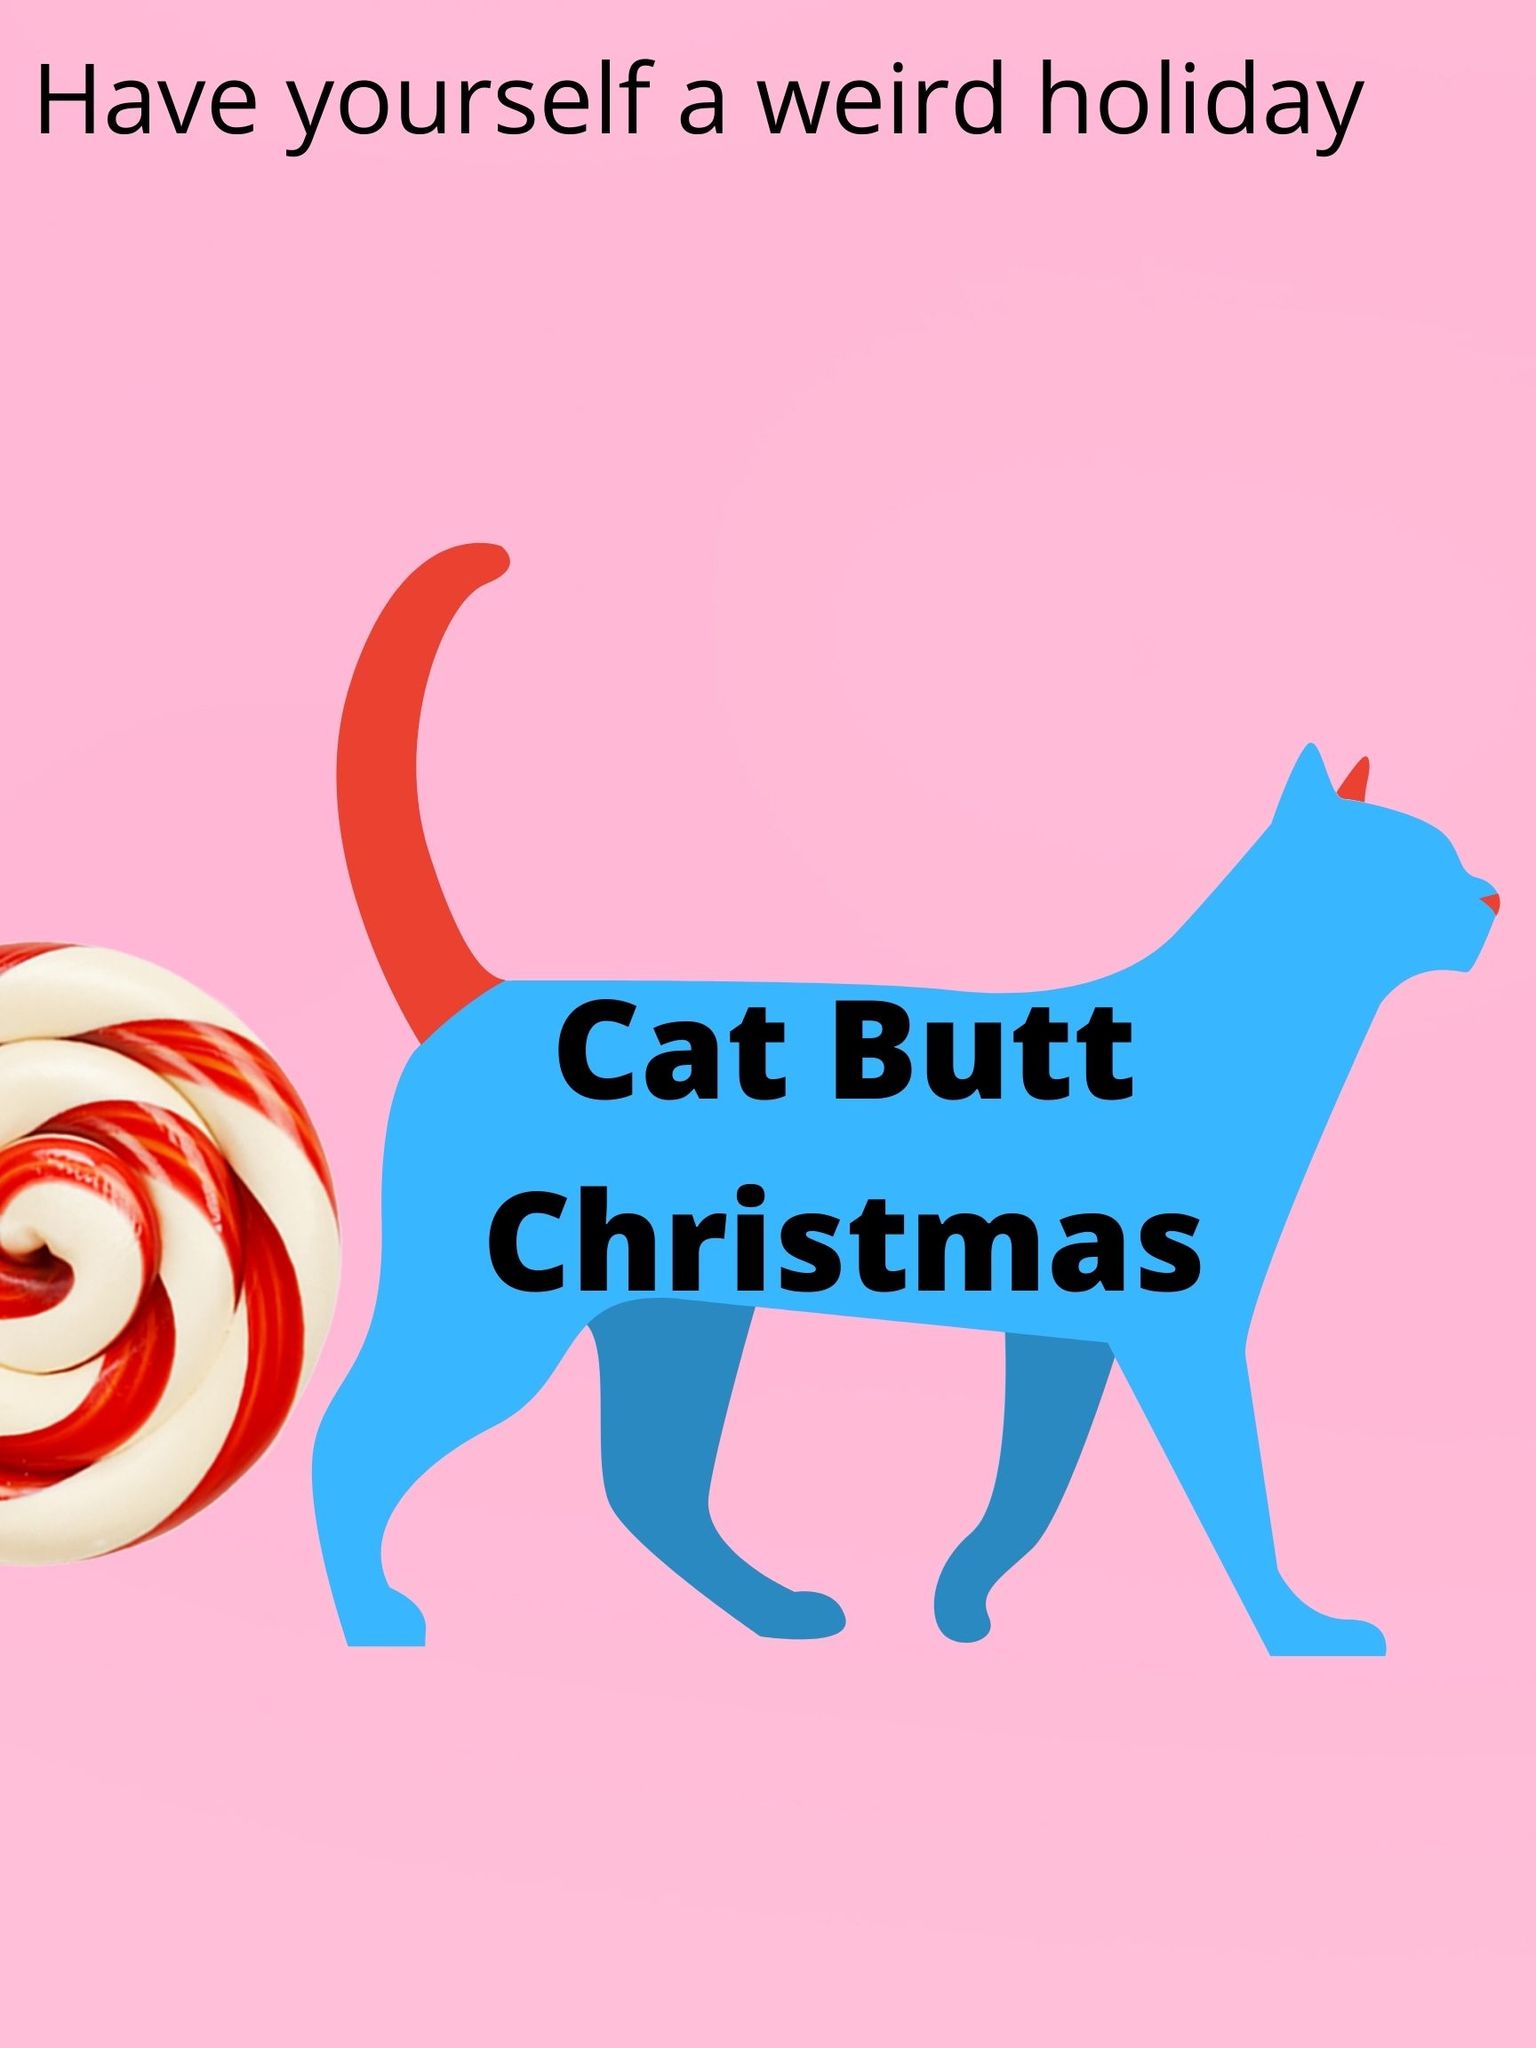 CAT BUTT CHRISTMAS